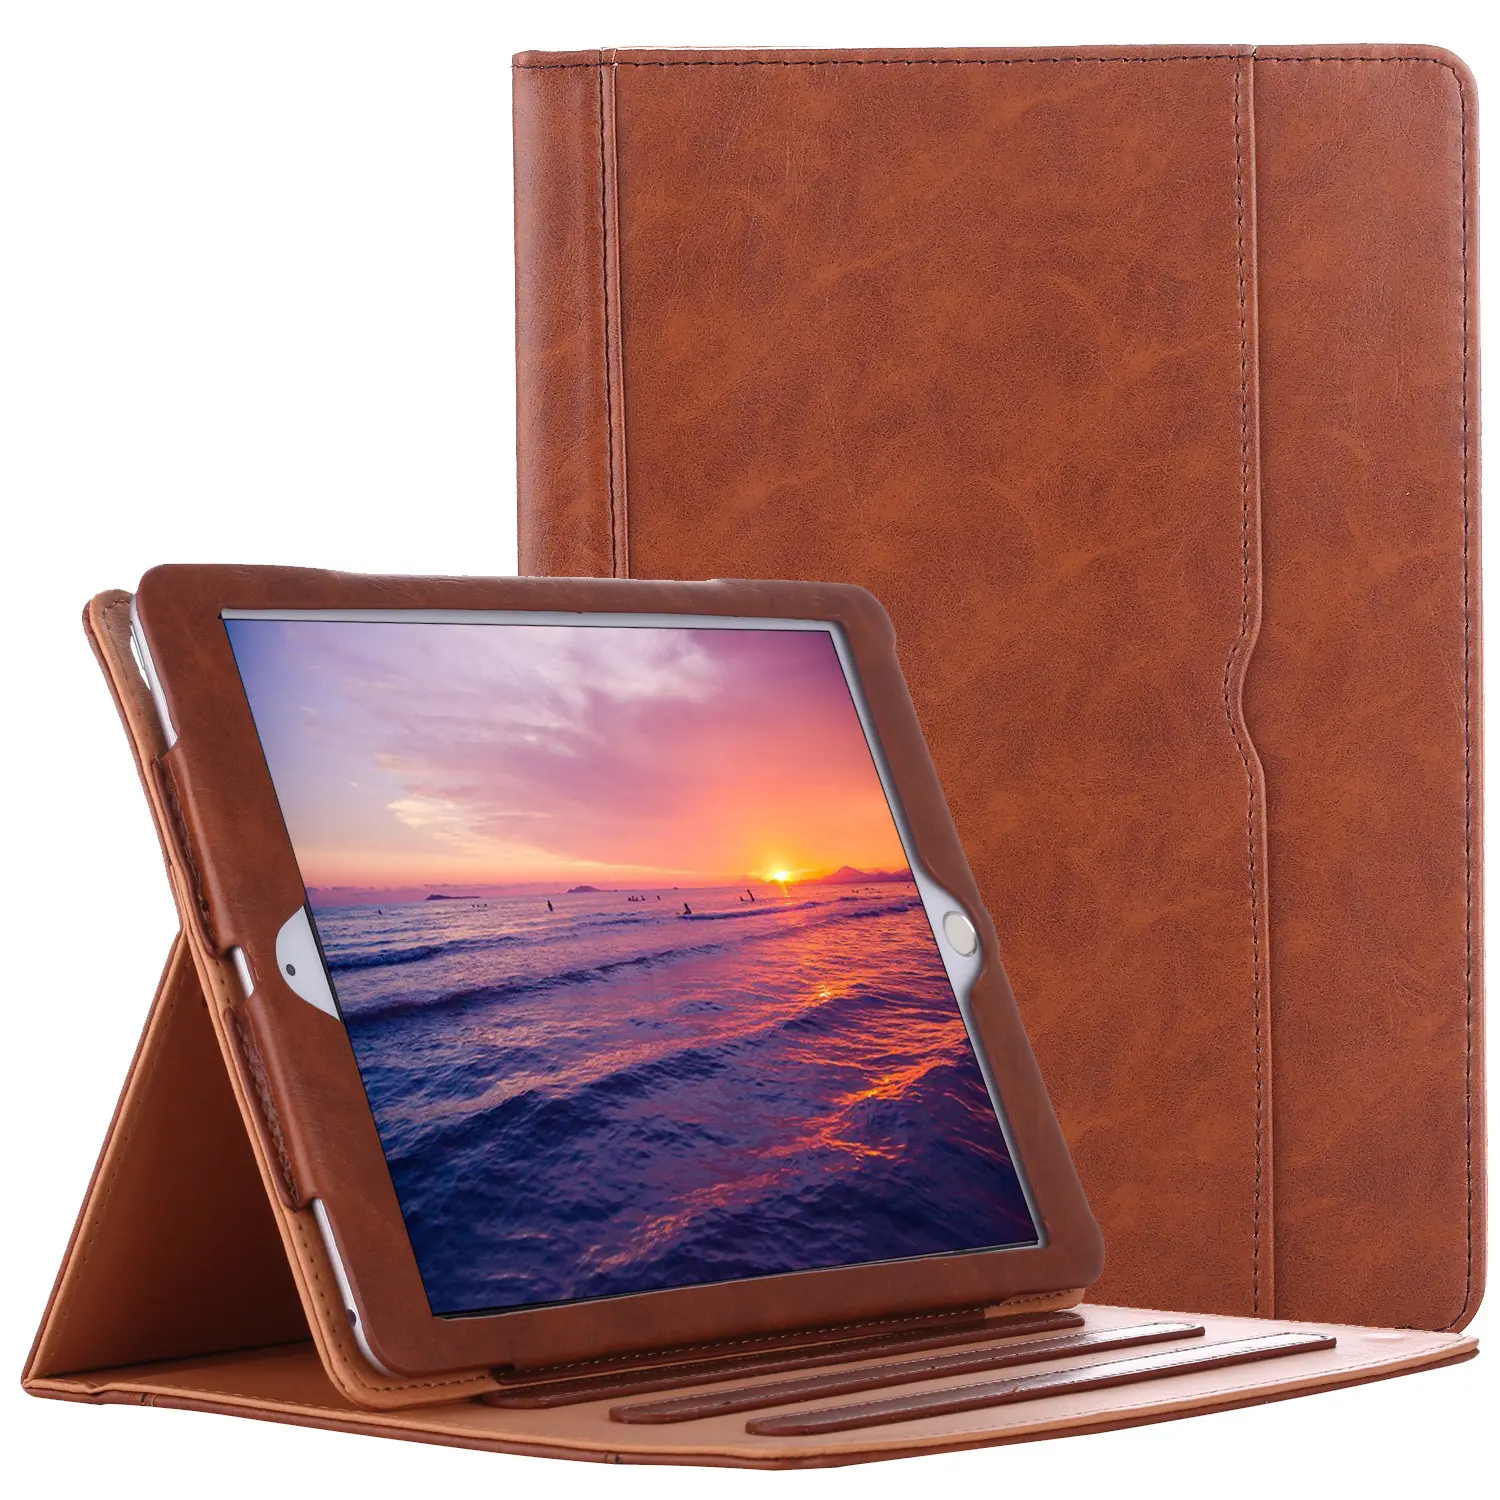 Custodia in pelle per ipad air air2 Premium Leather Business Folio Stand Cover con portamatite Apple integrato